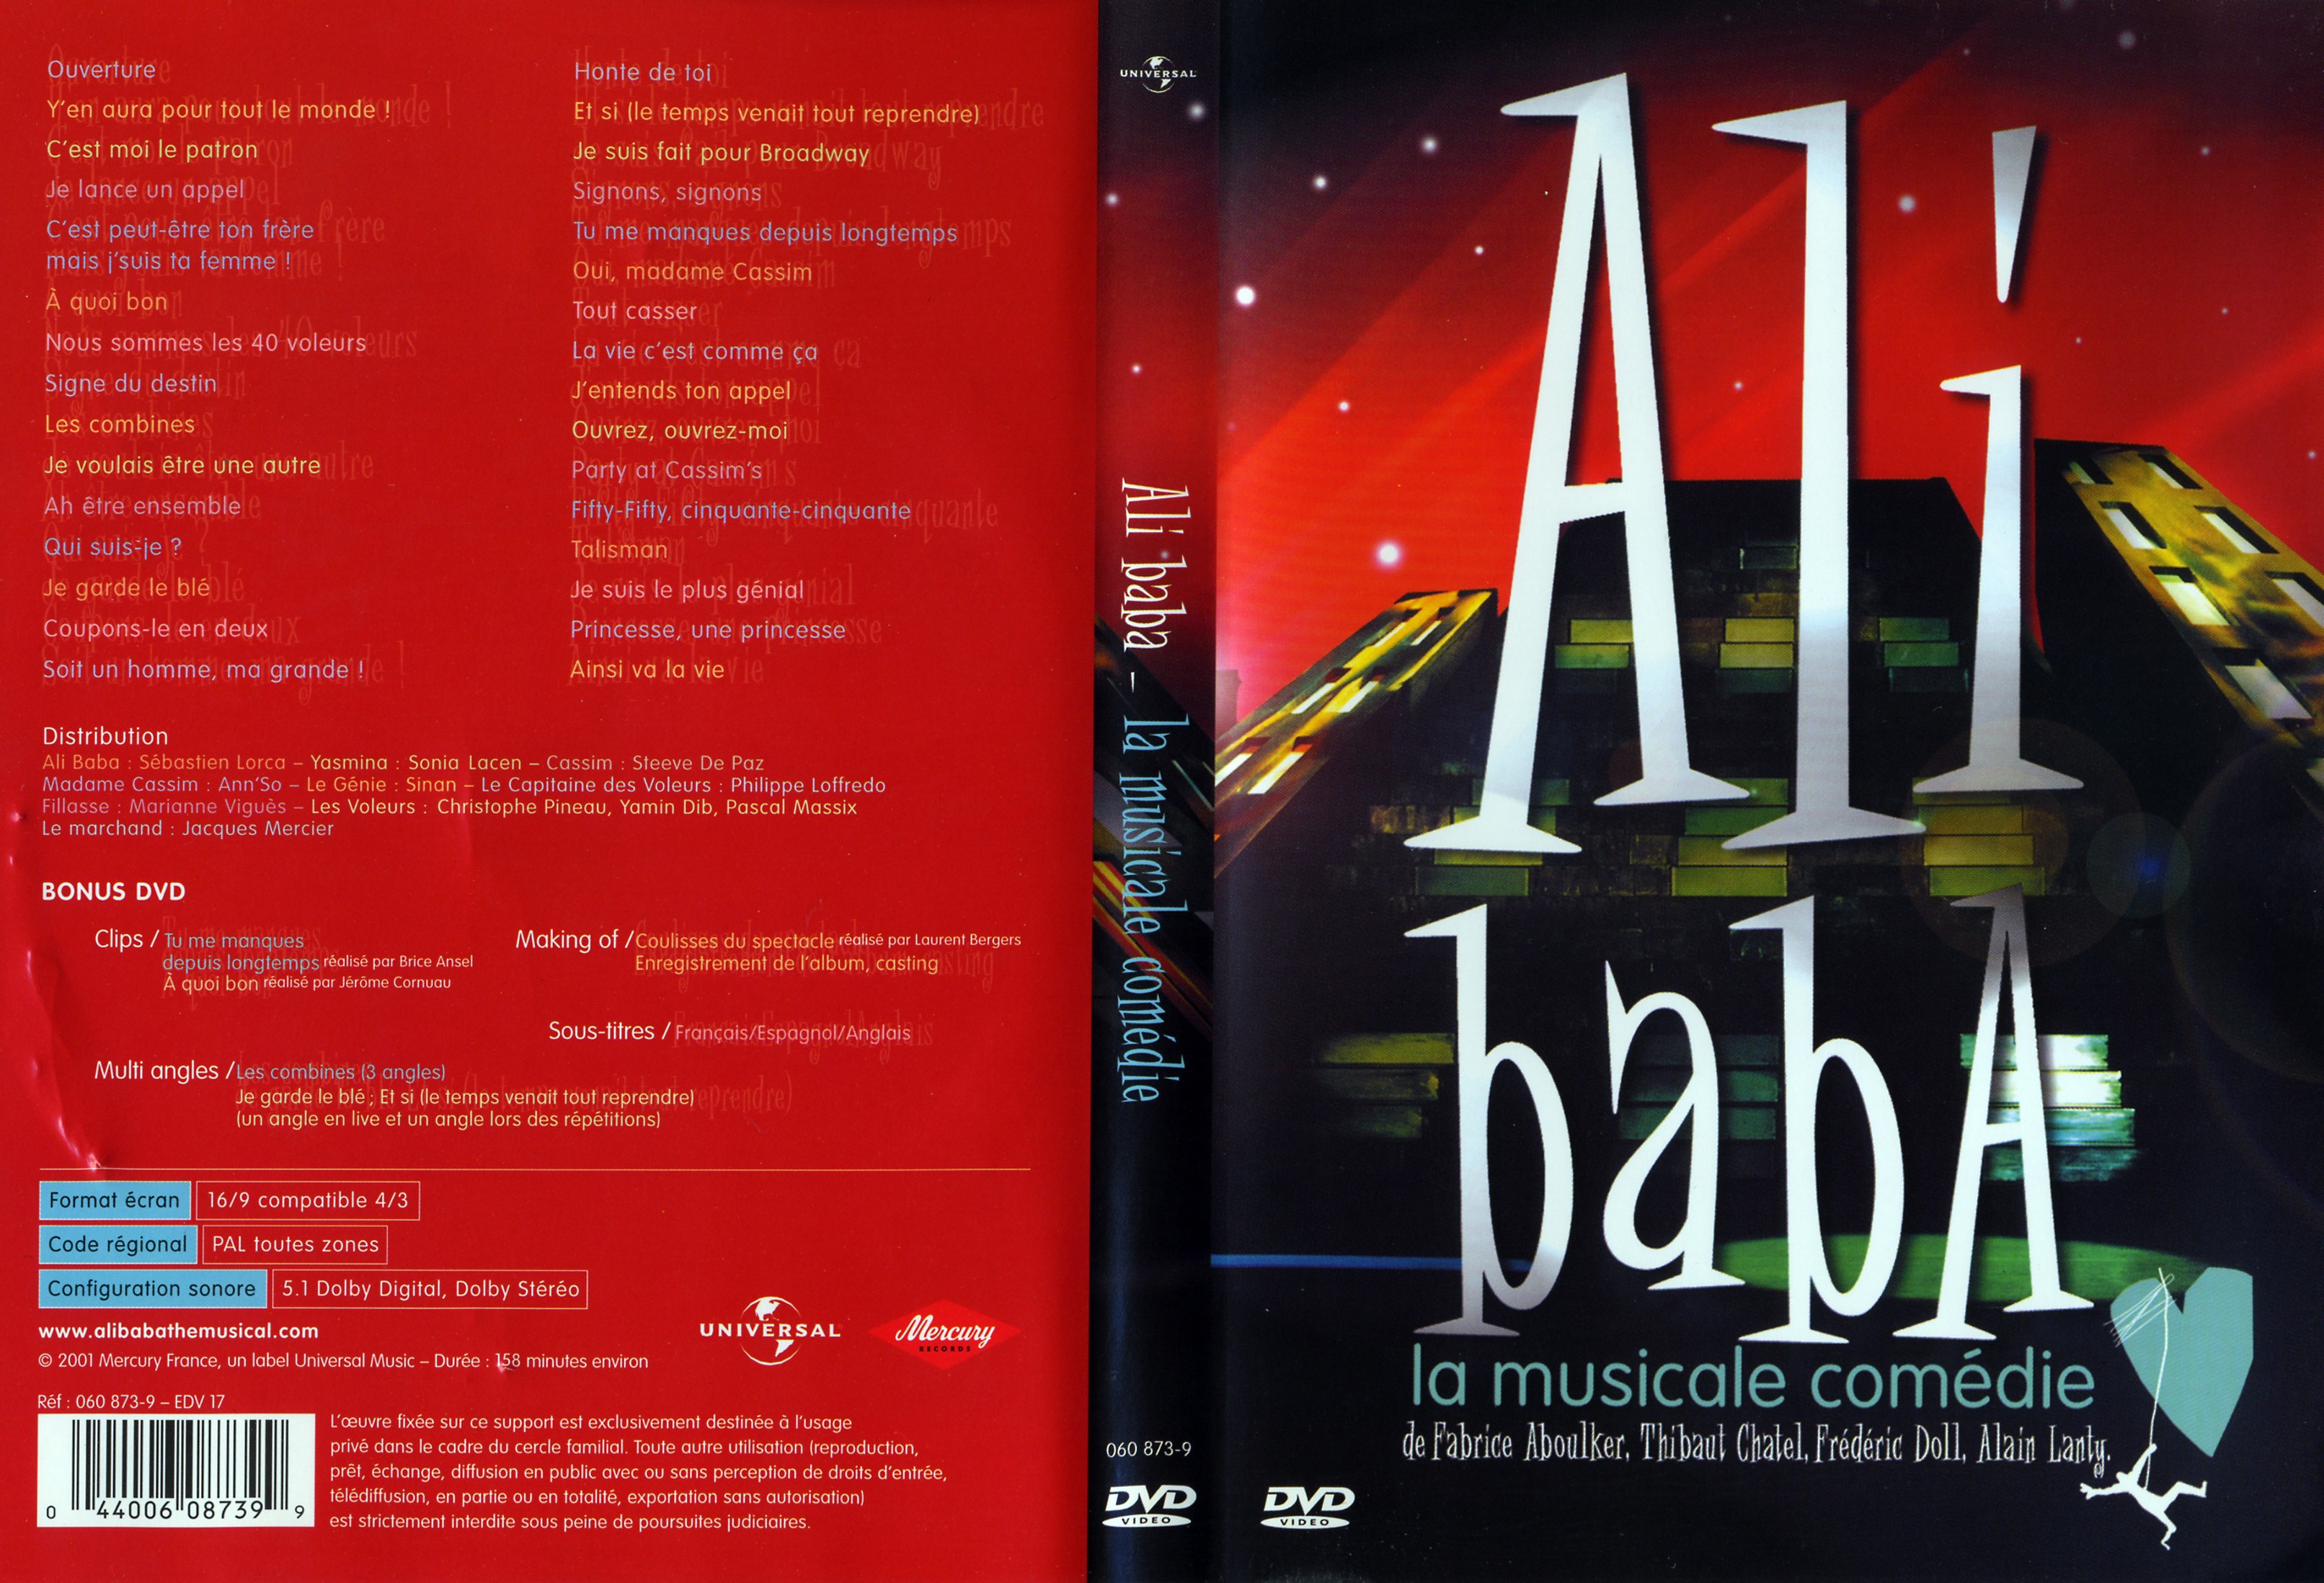 Jaquette DVD Ali baba la musicale comedie